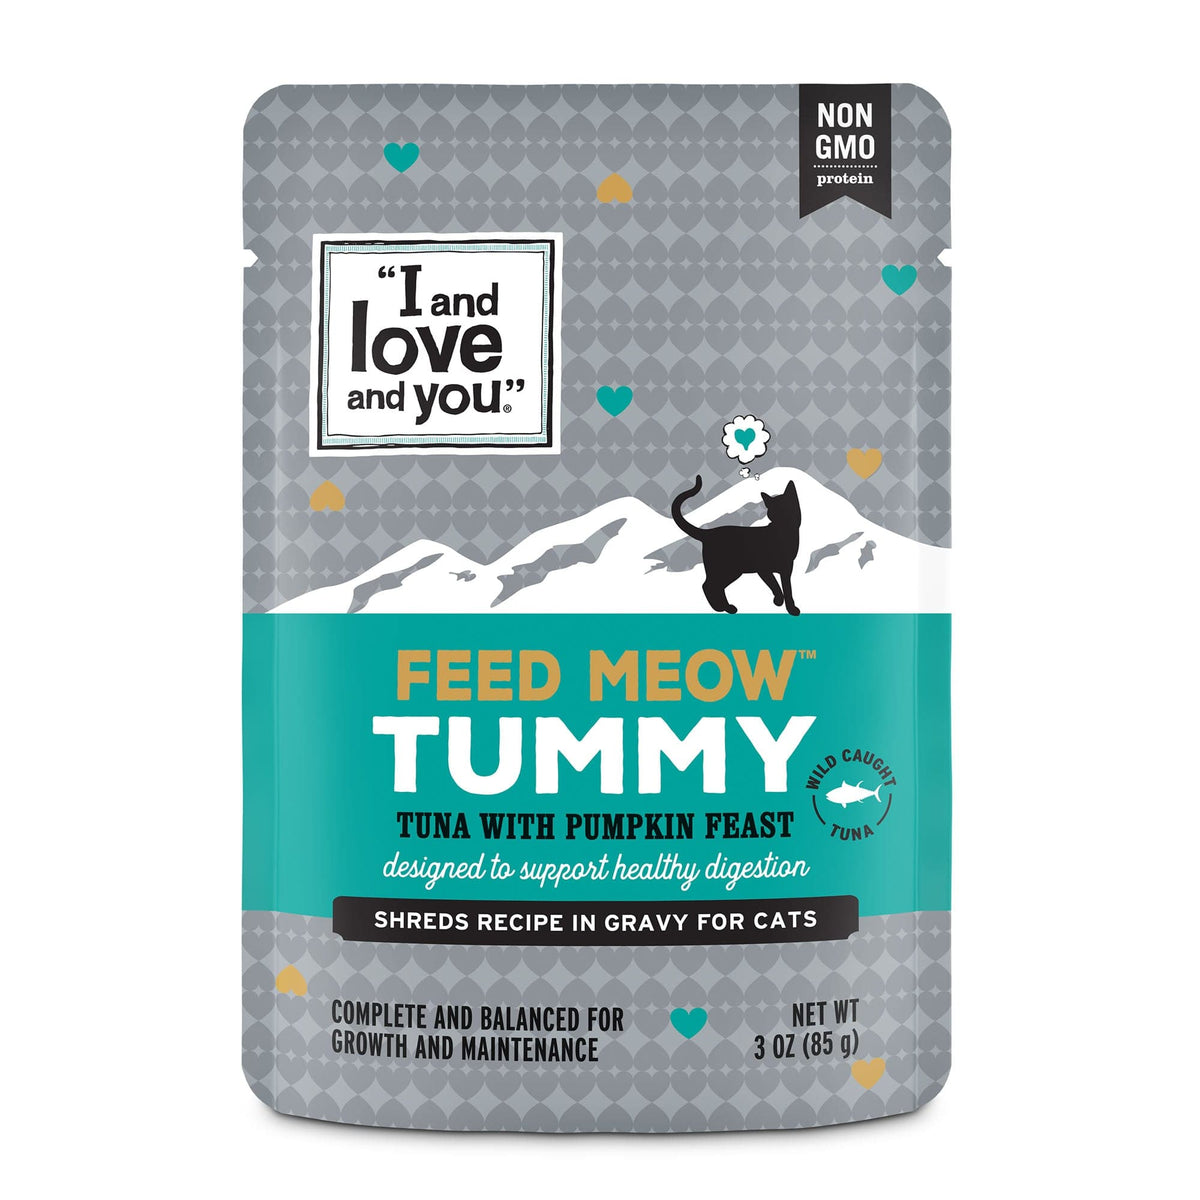 Feed Meow Tummy